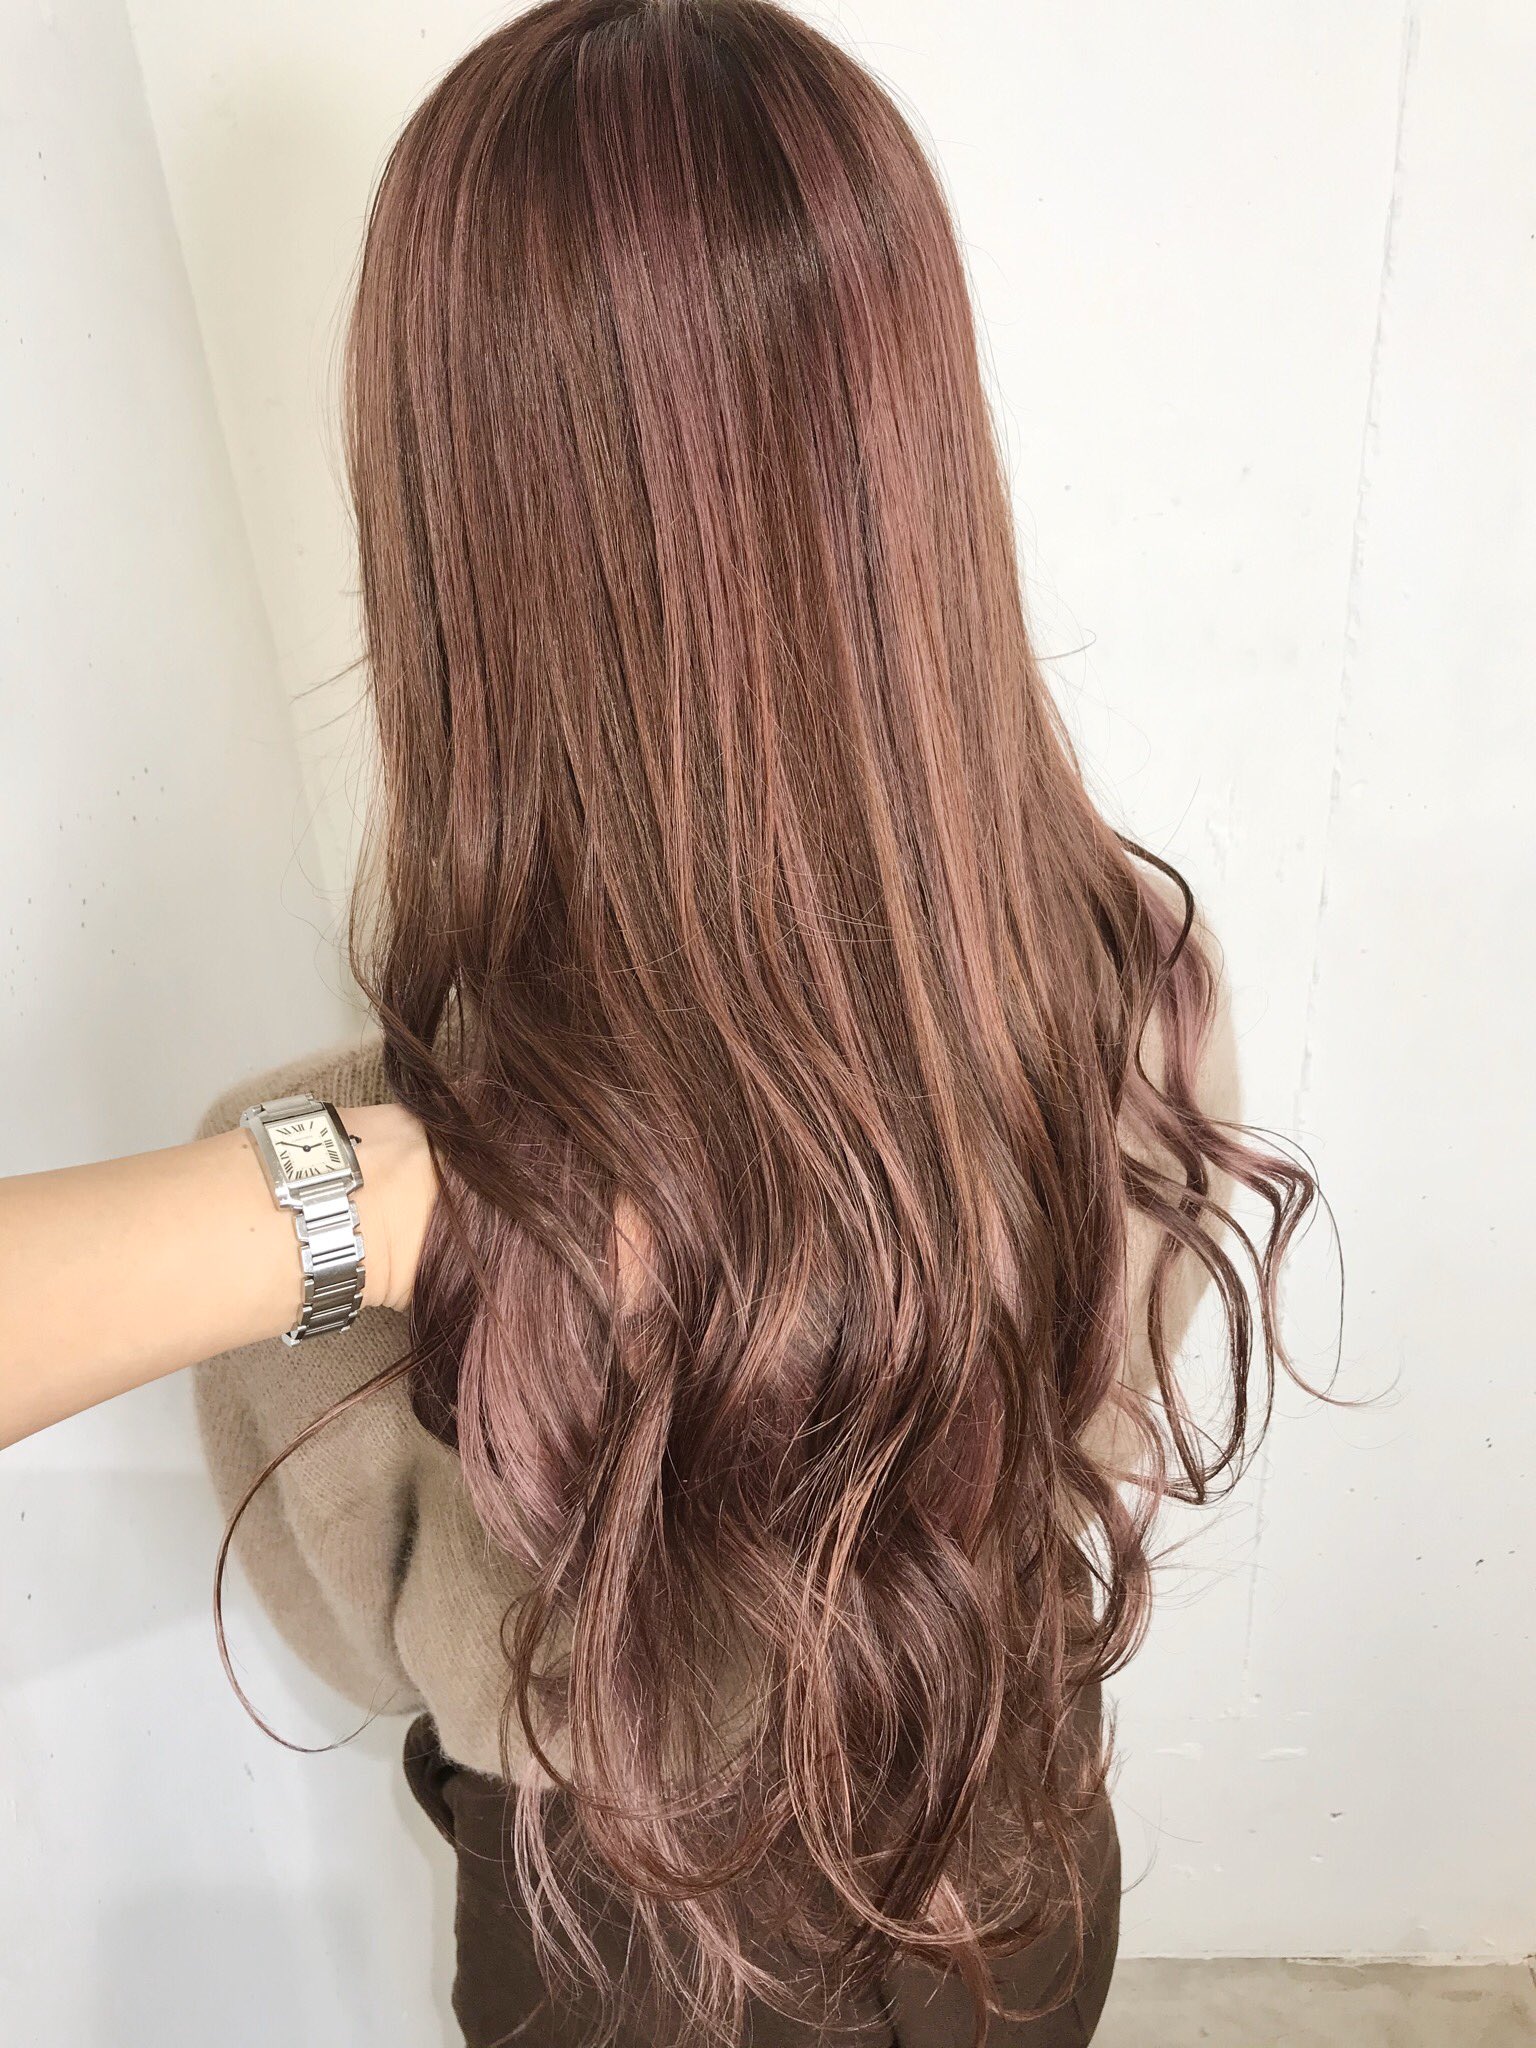 Aiko 在 Twitter 上 Pink Hair 左 ピンクメッシュカラー 右 ラベンダーピンクカラーにピンクエクステ ピンクヘア ピンク髪 春ヘアカラー T Co Bq7r44gyqb Twitter